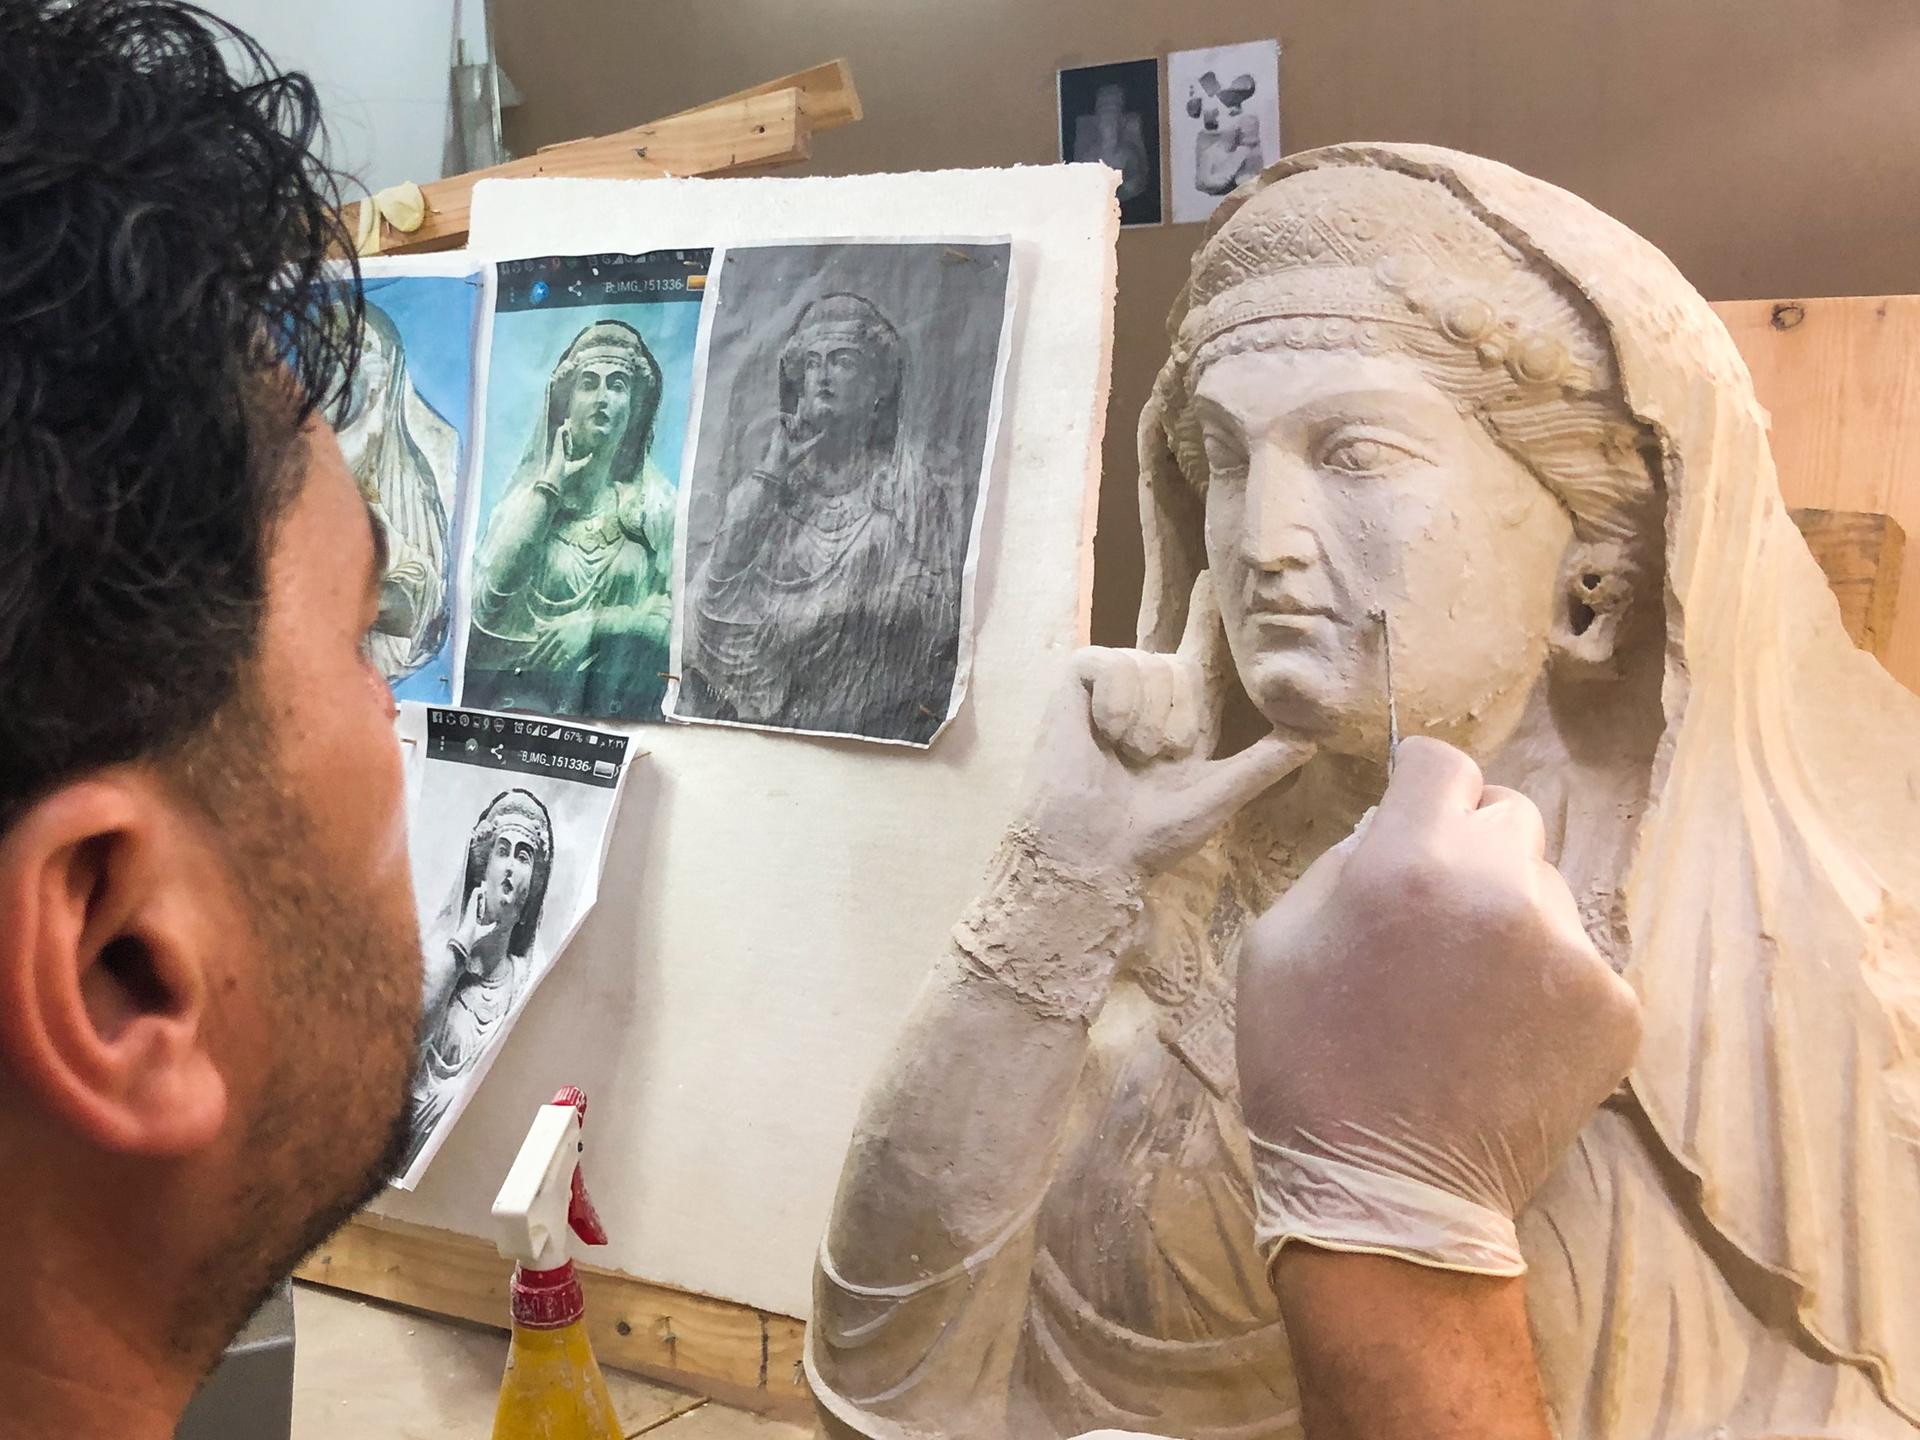 Ein Kunstrestaurator arbeitet an einem alten Basrelief aus Palmyra, das von Mitgliedern des IS zerstört wurde.